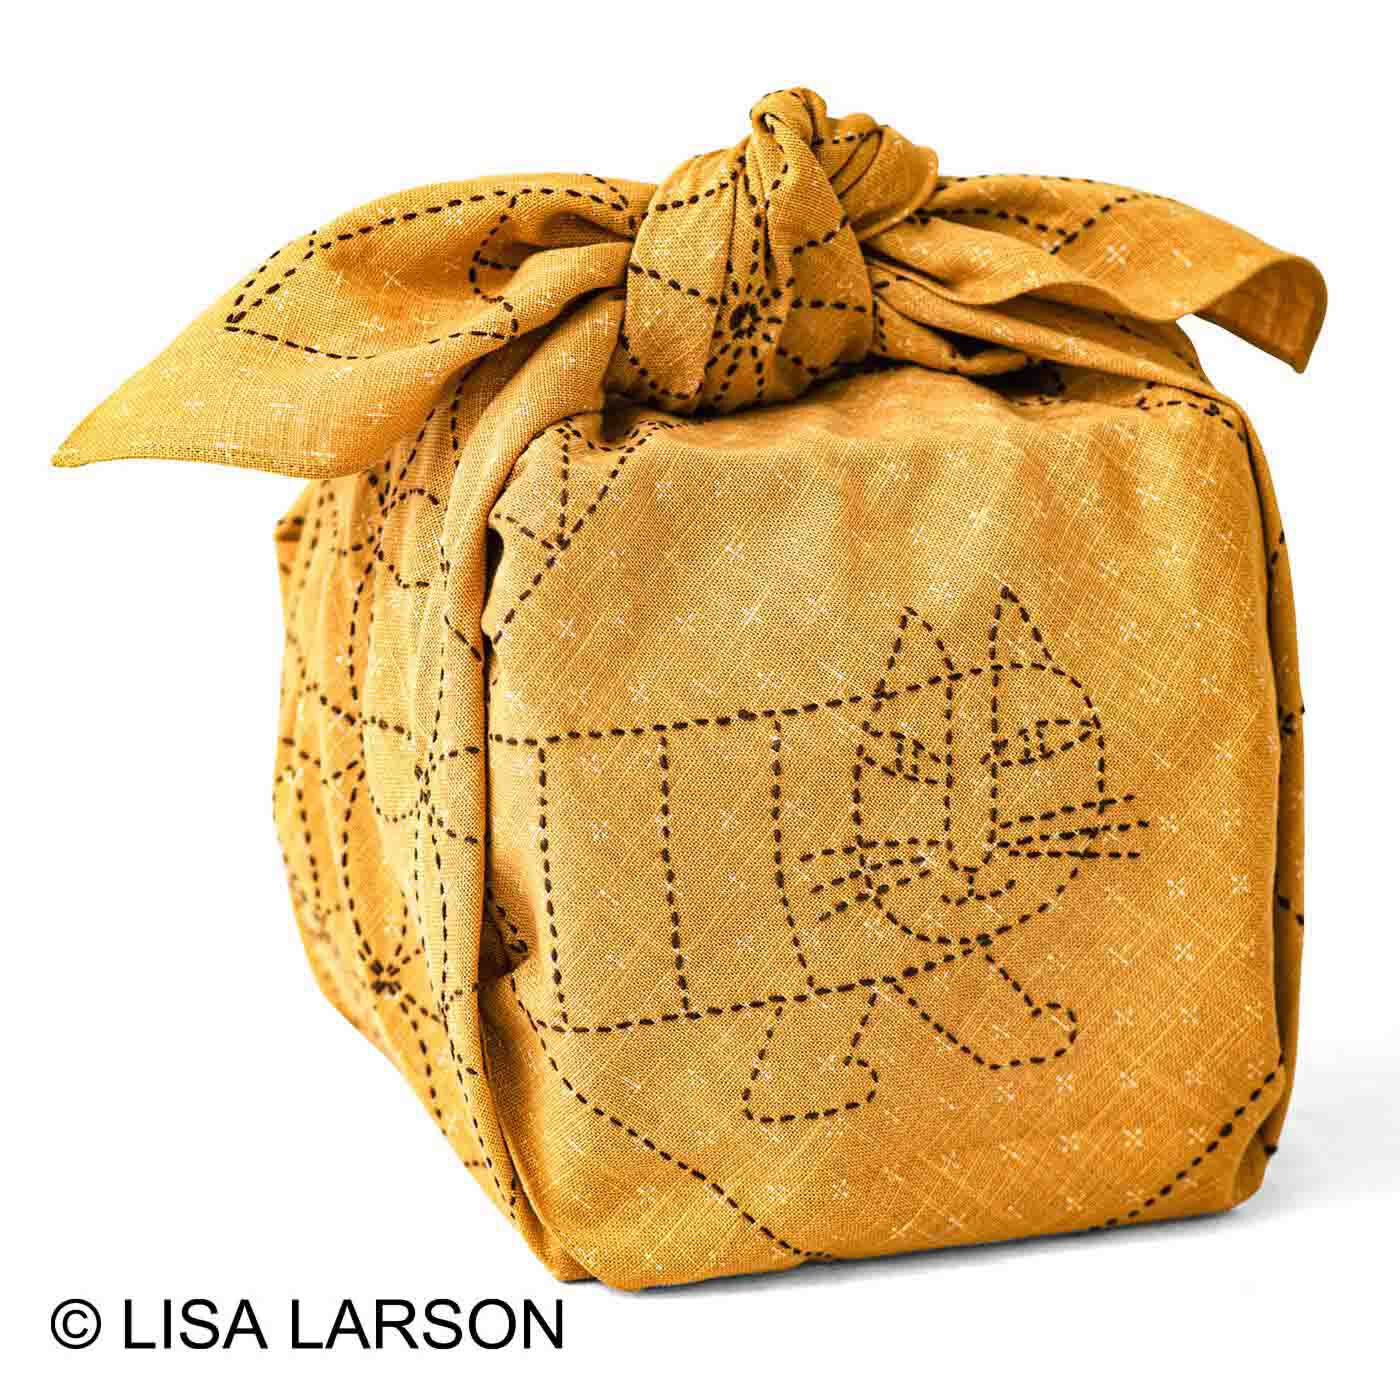 クチュリエ×リサ・ラーソン 縫製済みがうれしい ちくちく刺し子の大判